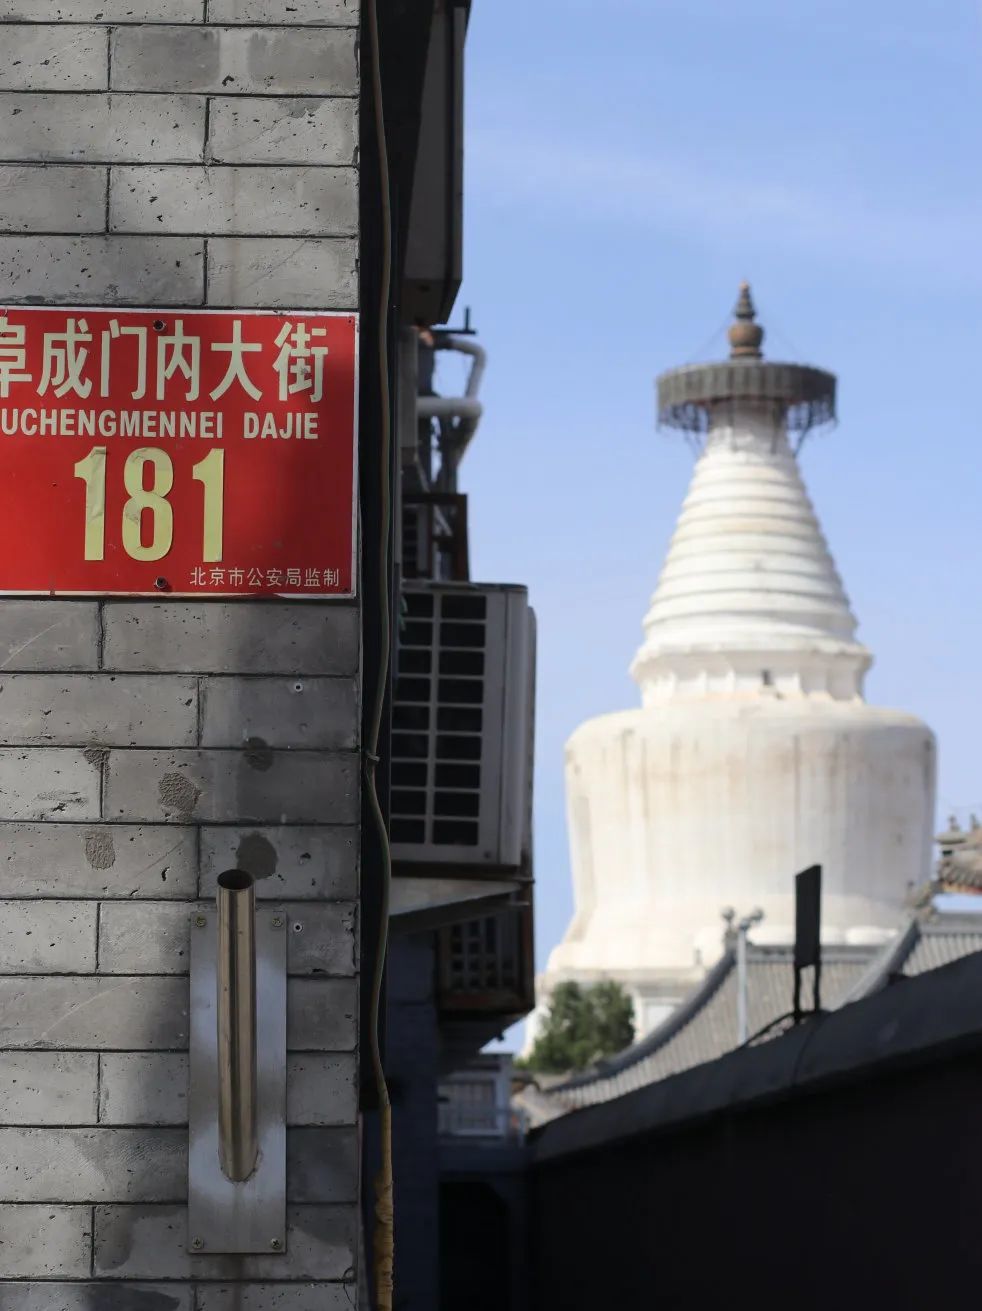 天辰注册登录北京西城白塔寺漫步 老街不止是红砖青瓦